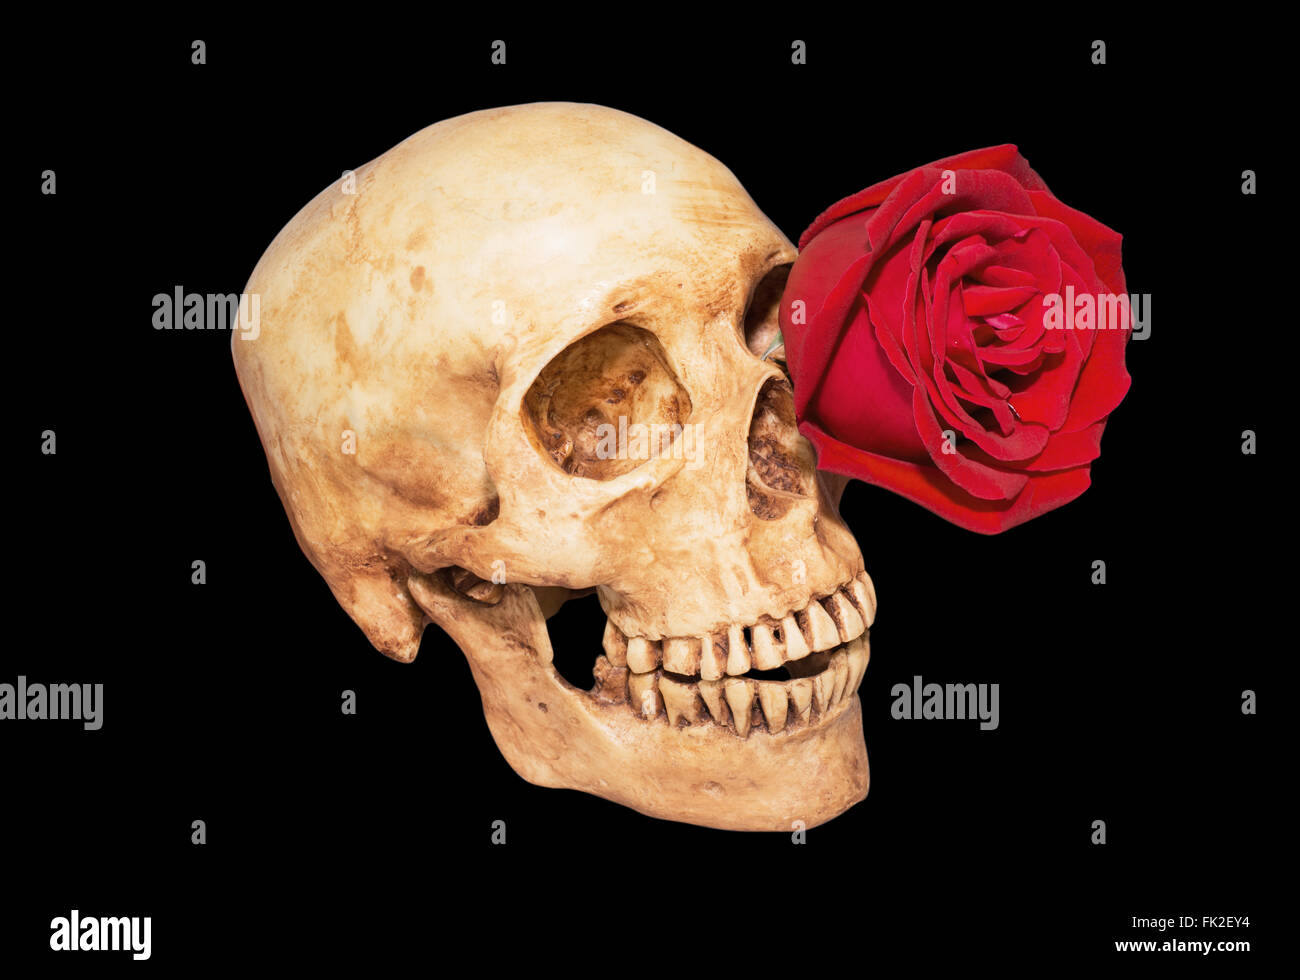 Rote Rose im Augenhintergrund Totenkopf schwarz, Clipping-Pfad Stockfoto